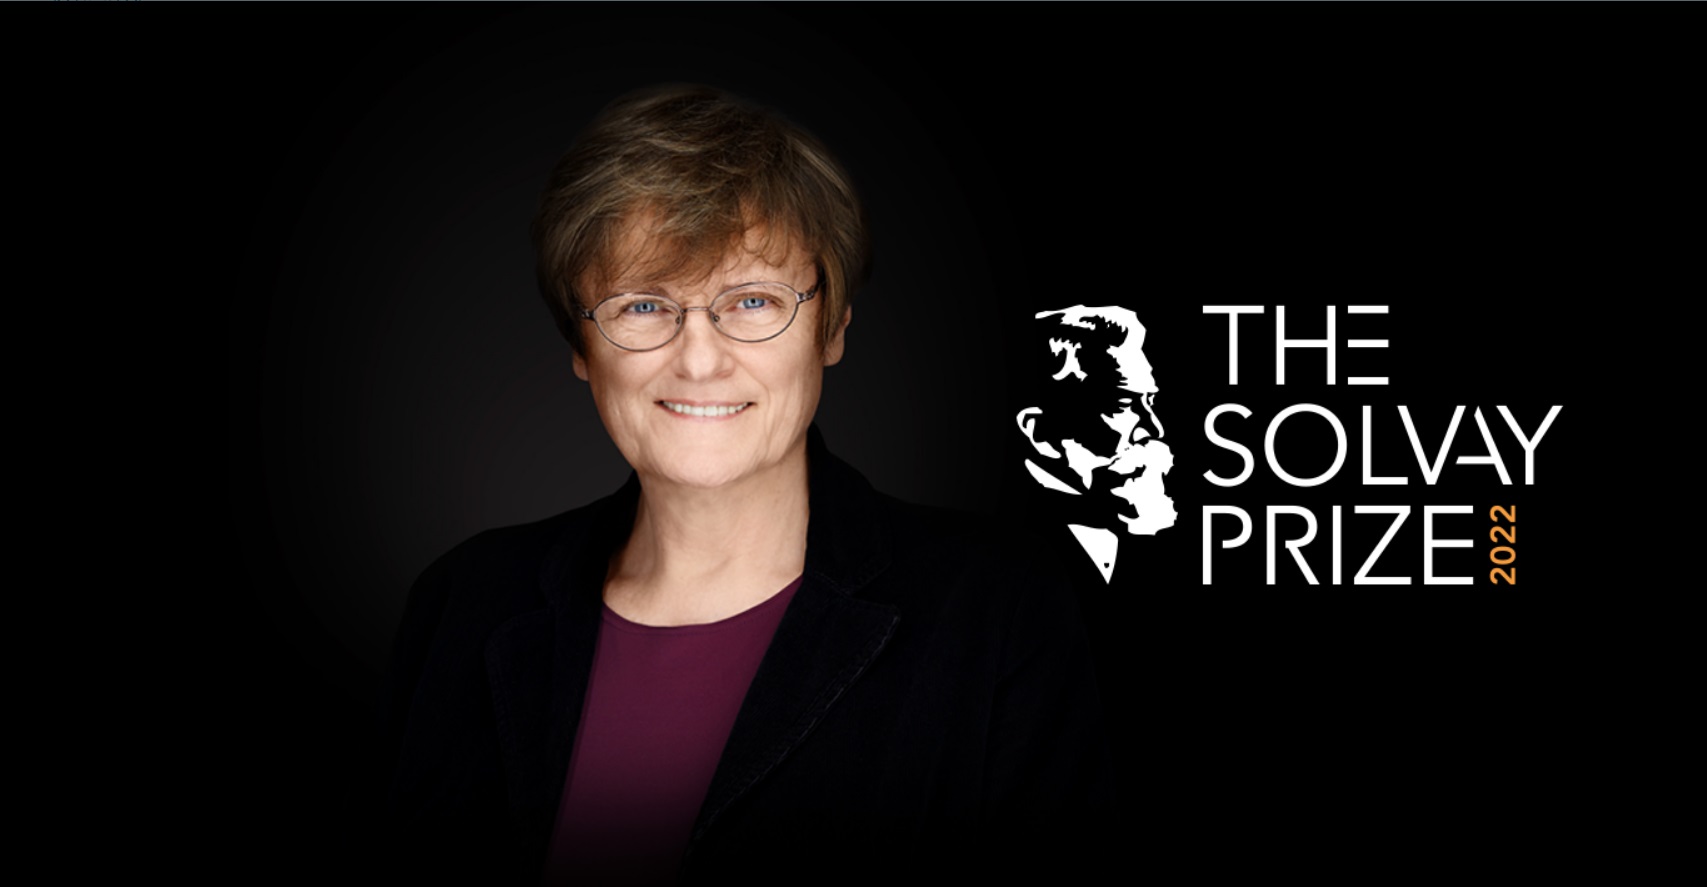 Solvay_awards_300k_science_prize_to_Professor_Katalin_Kariko